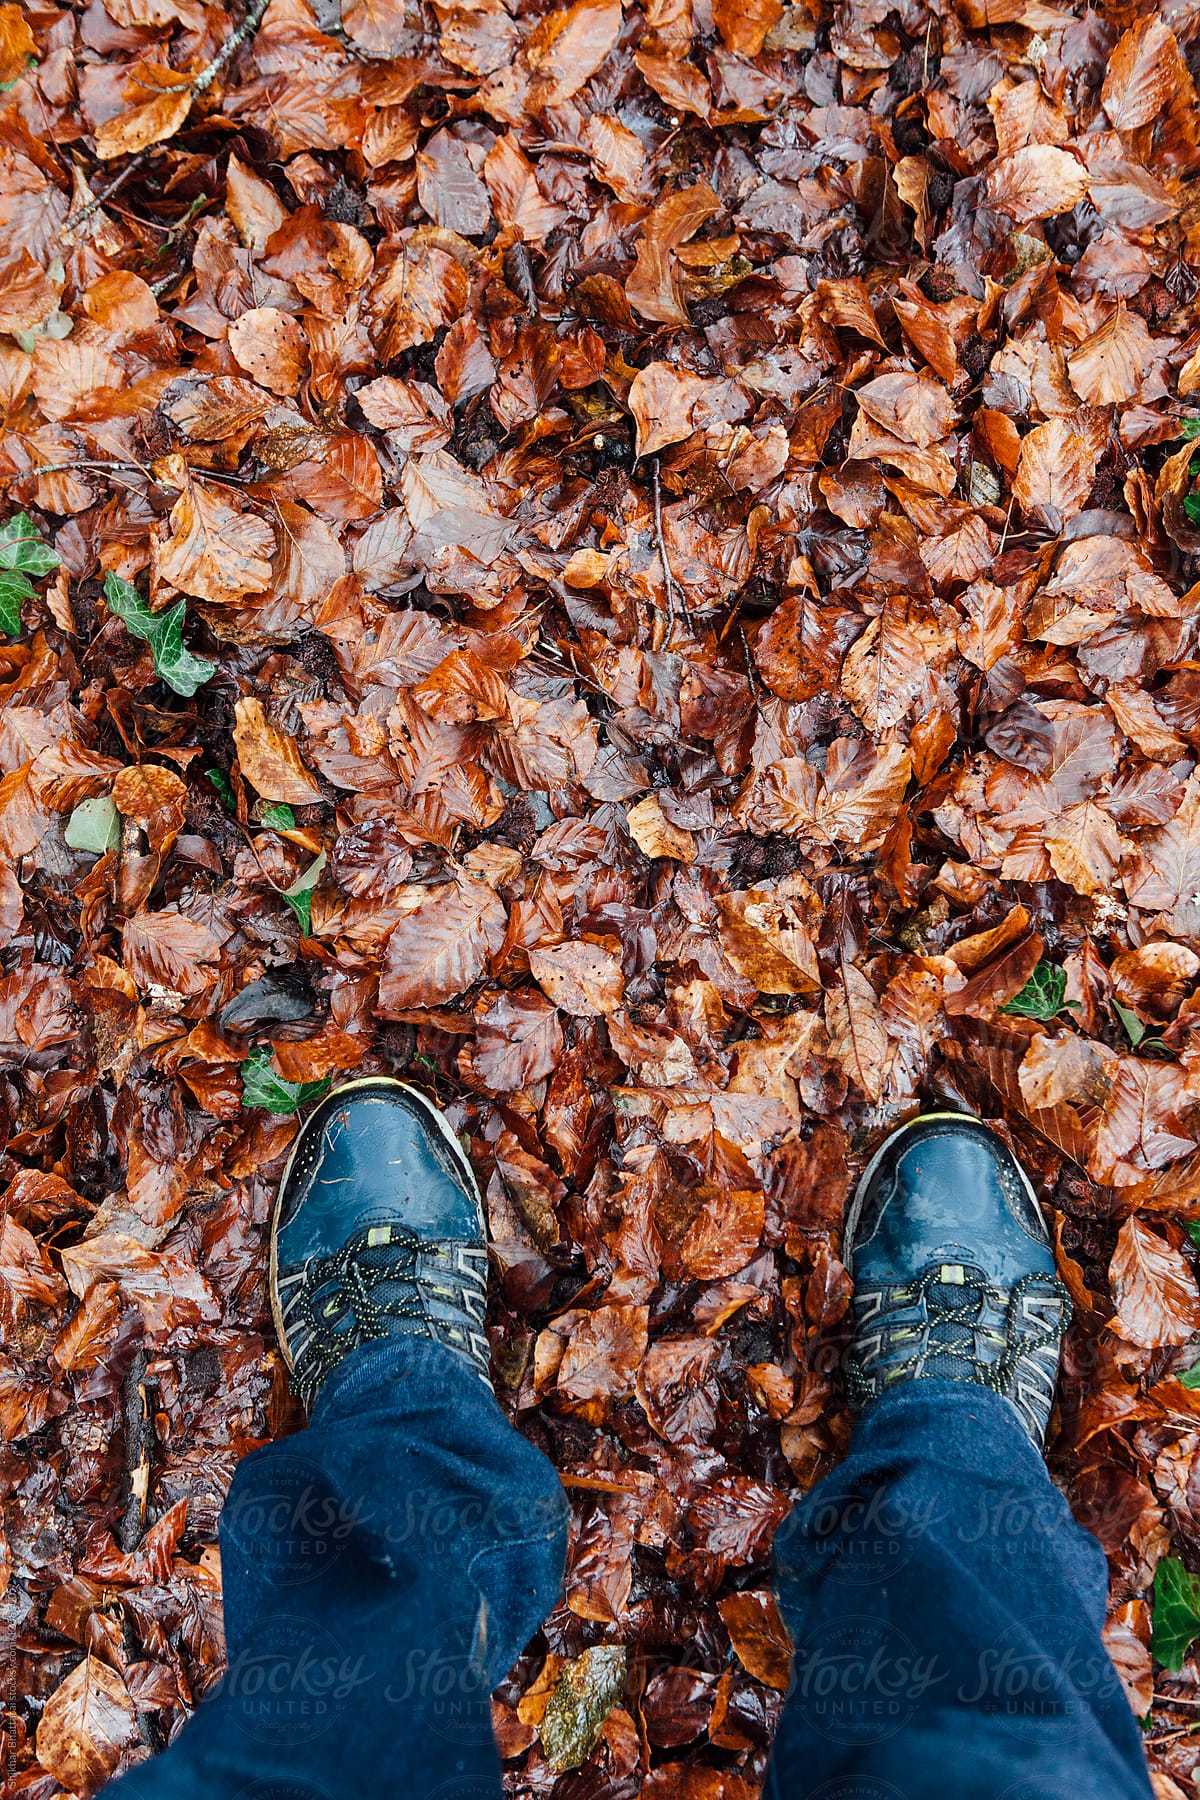 Feet on a slushy fall leaves in winter.